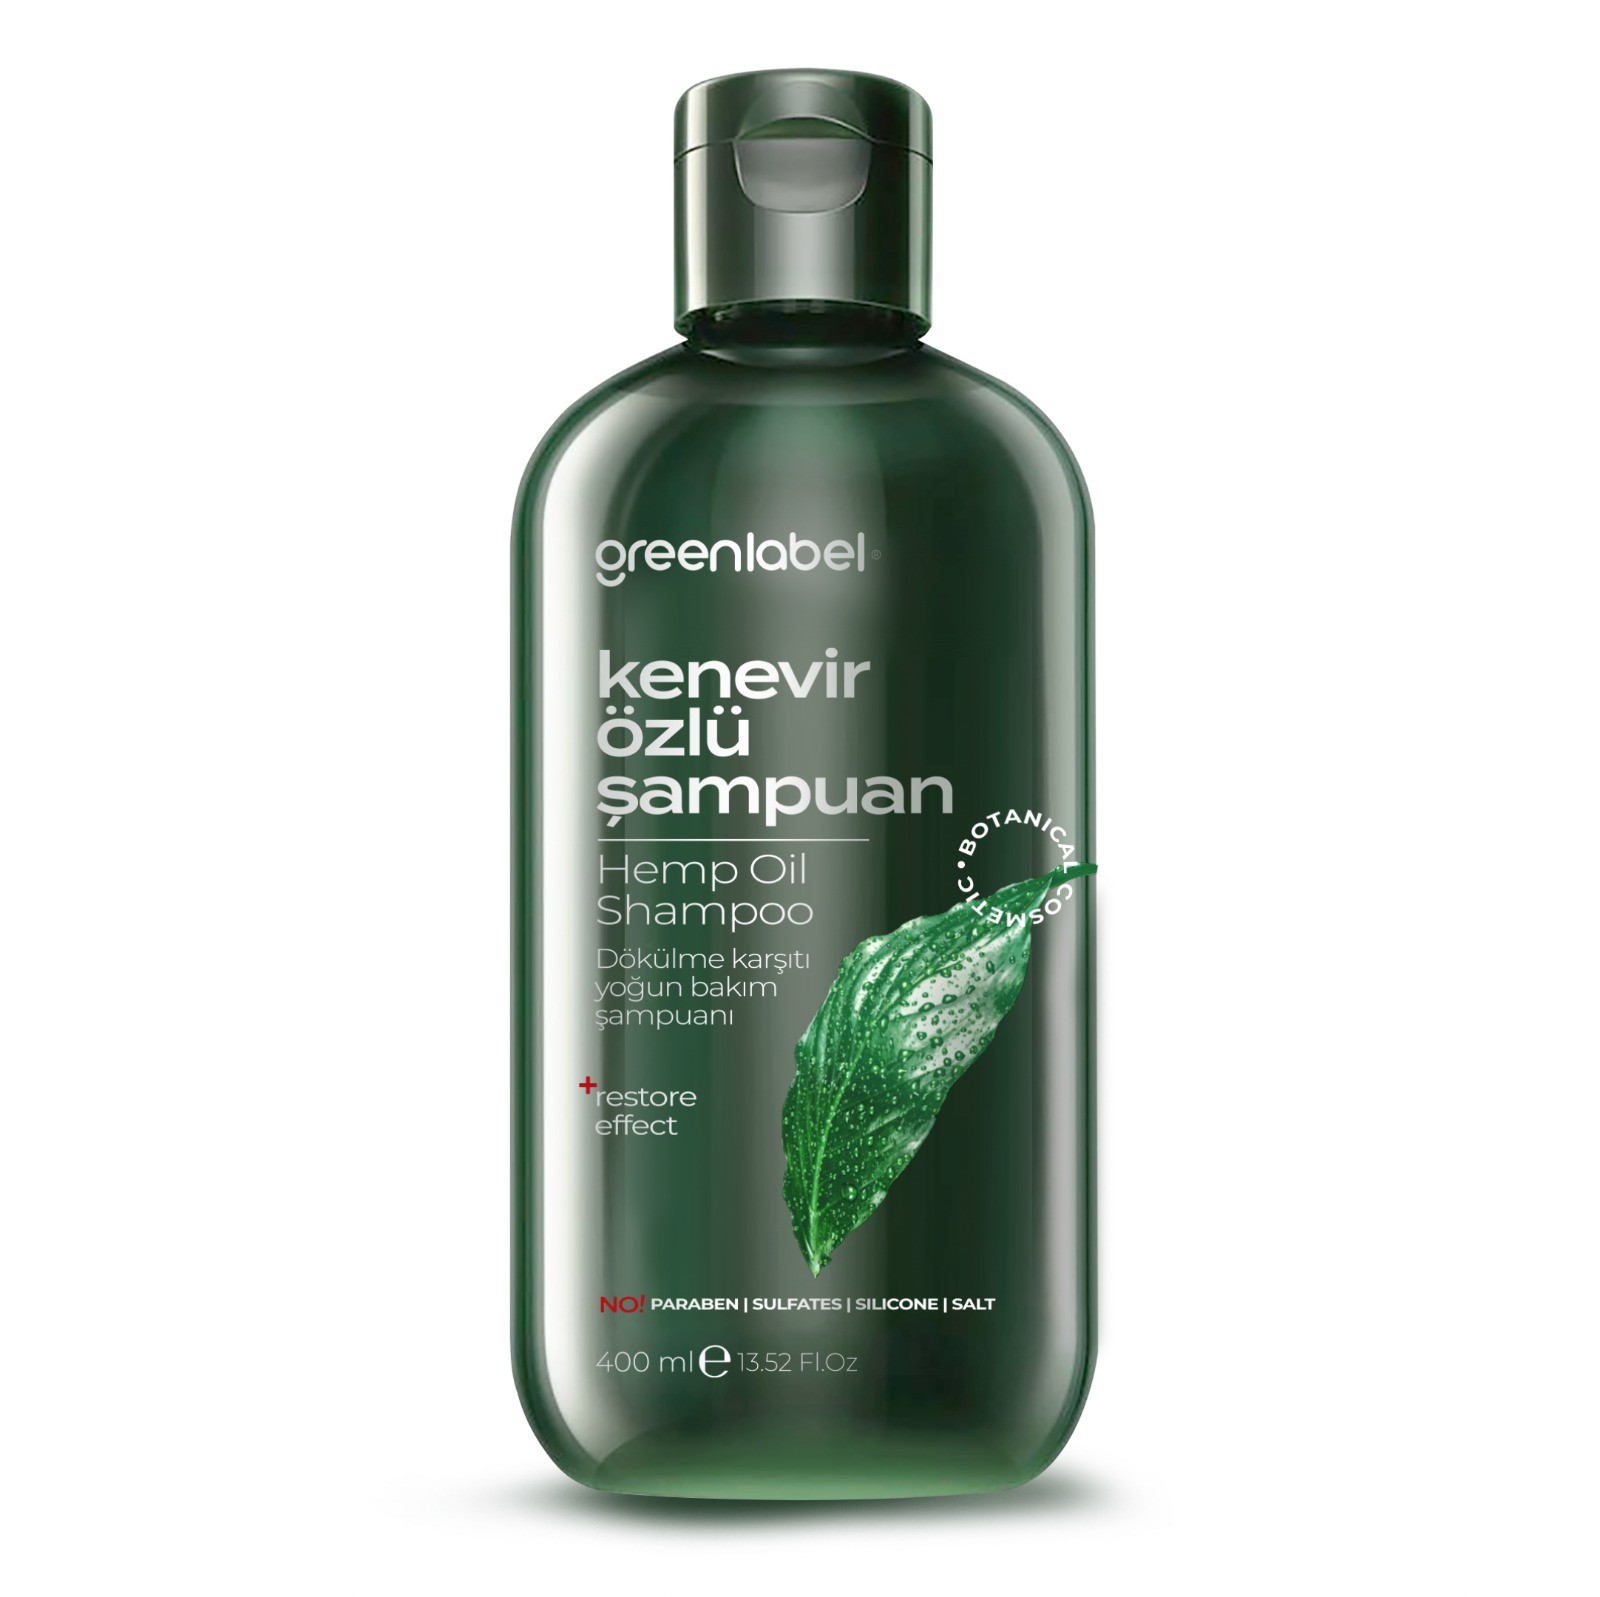 GREENLABEL Kenevir Özlü Tuzsuz Parabensiz Sülfatsız Kepek Karşıtı Bakım Ve Onarım Şampuanı 400 ml